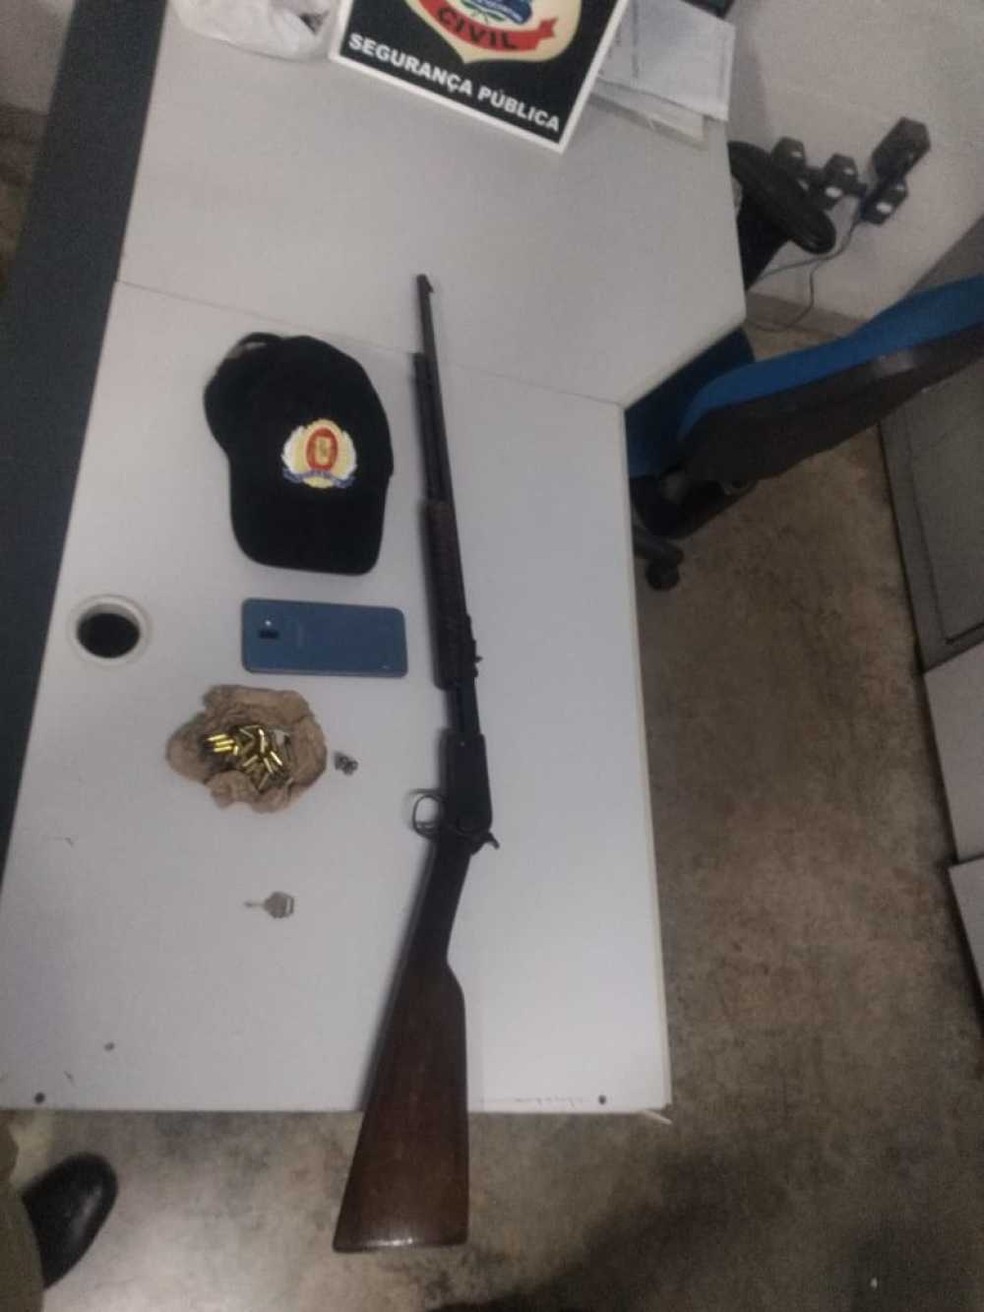 Arma que foi apreendida com um dos suspeitos — Foto: Divulgação/Ascom 8º BPM